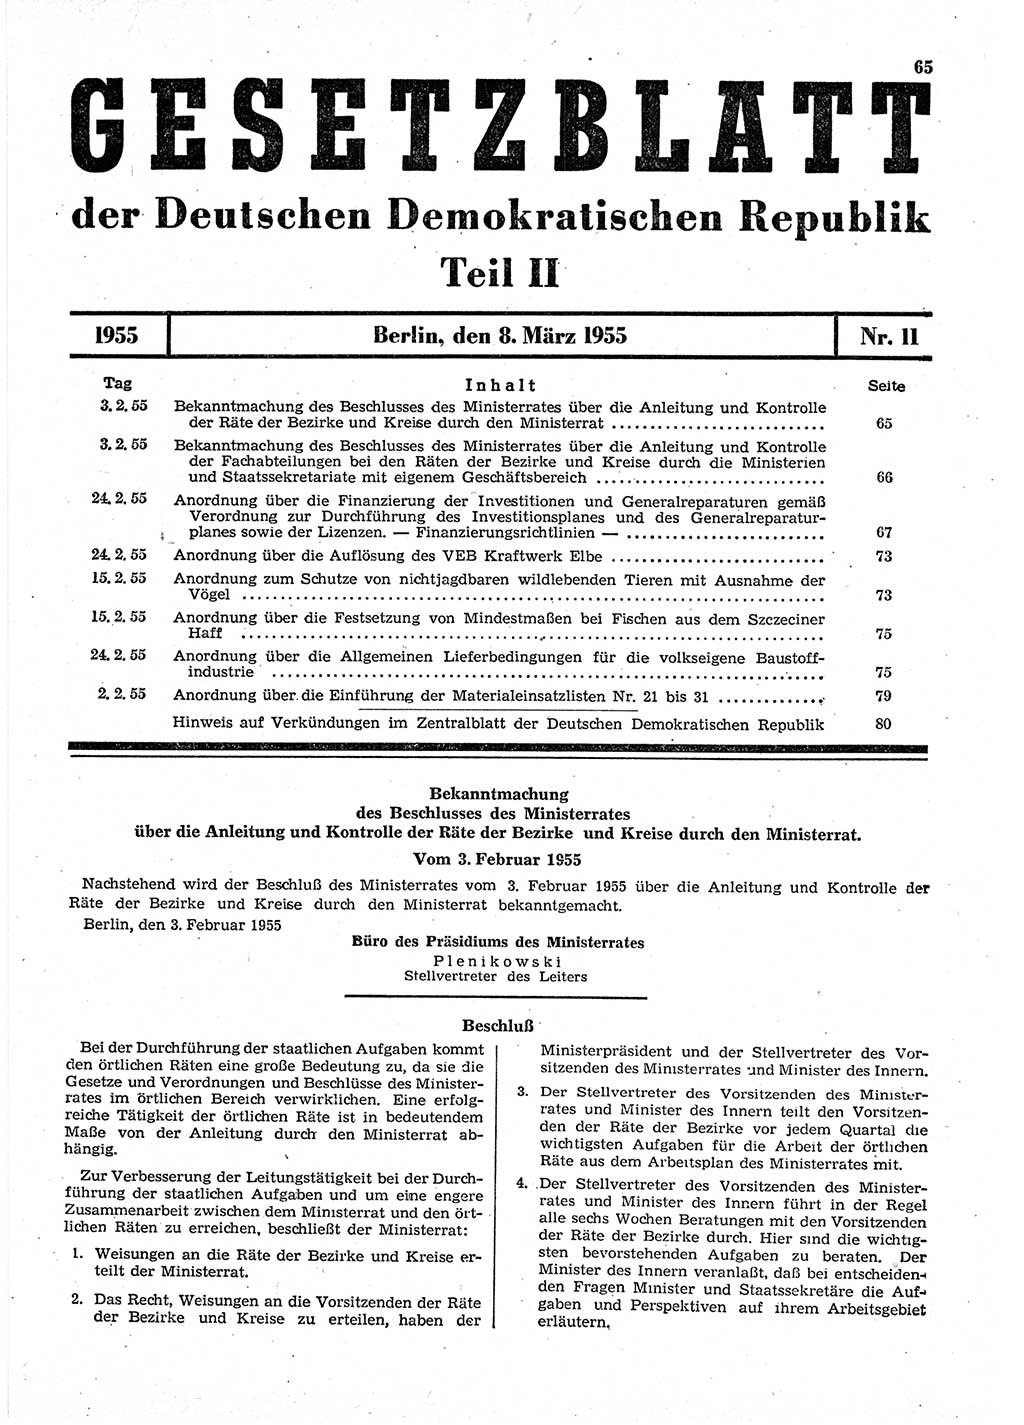 Gesetzblatt (GBl.) der Deutschen Demokratischen Republik (DDR) Teil ⅠⅠ 1955, Seite 65 (GBl. DDR ⅠⅠ 1955, S. 65)